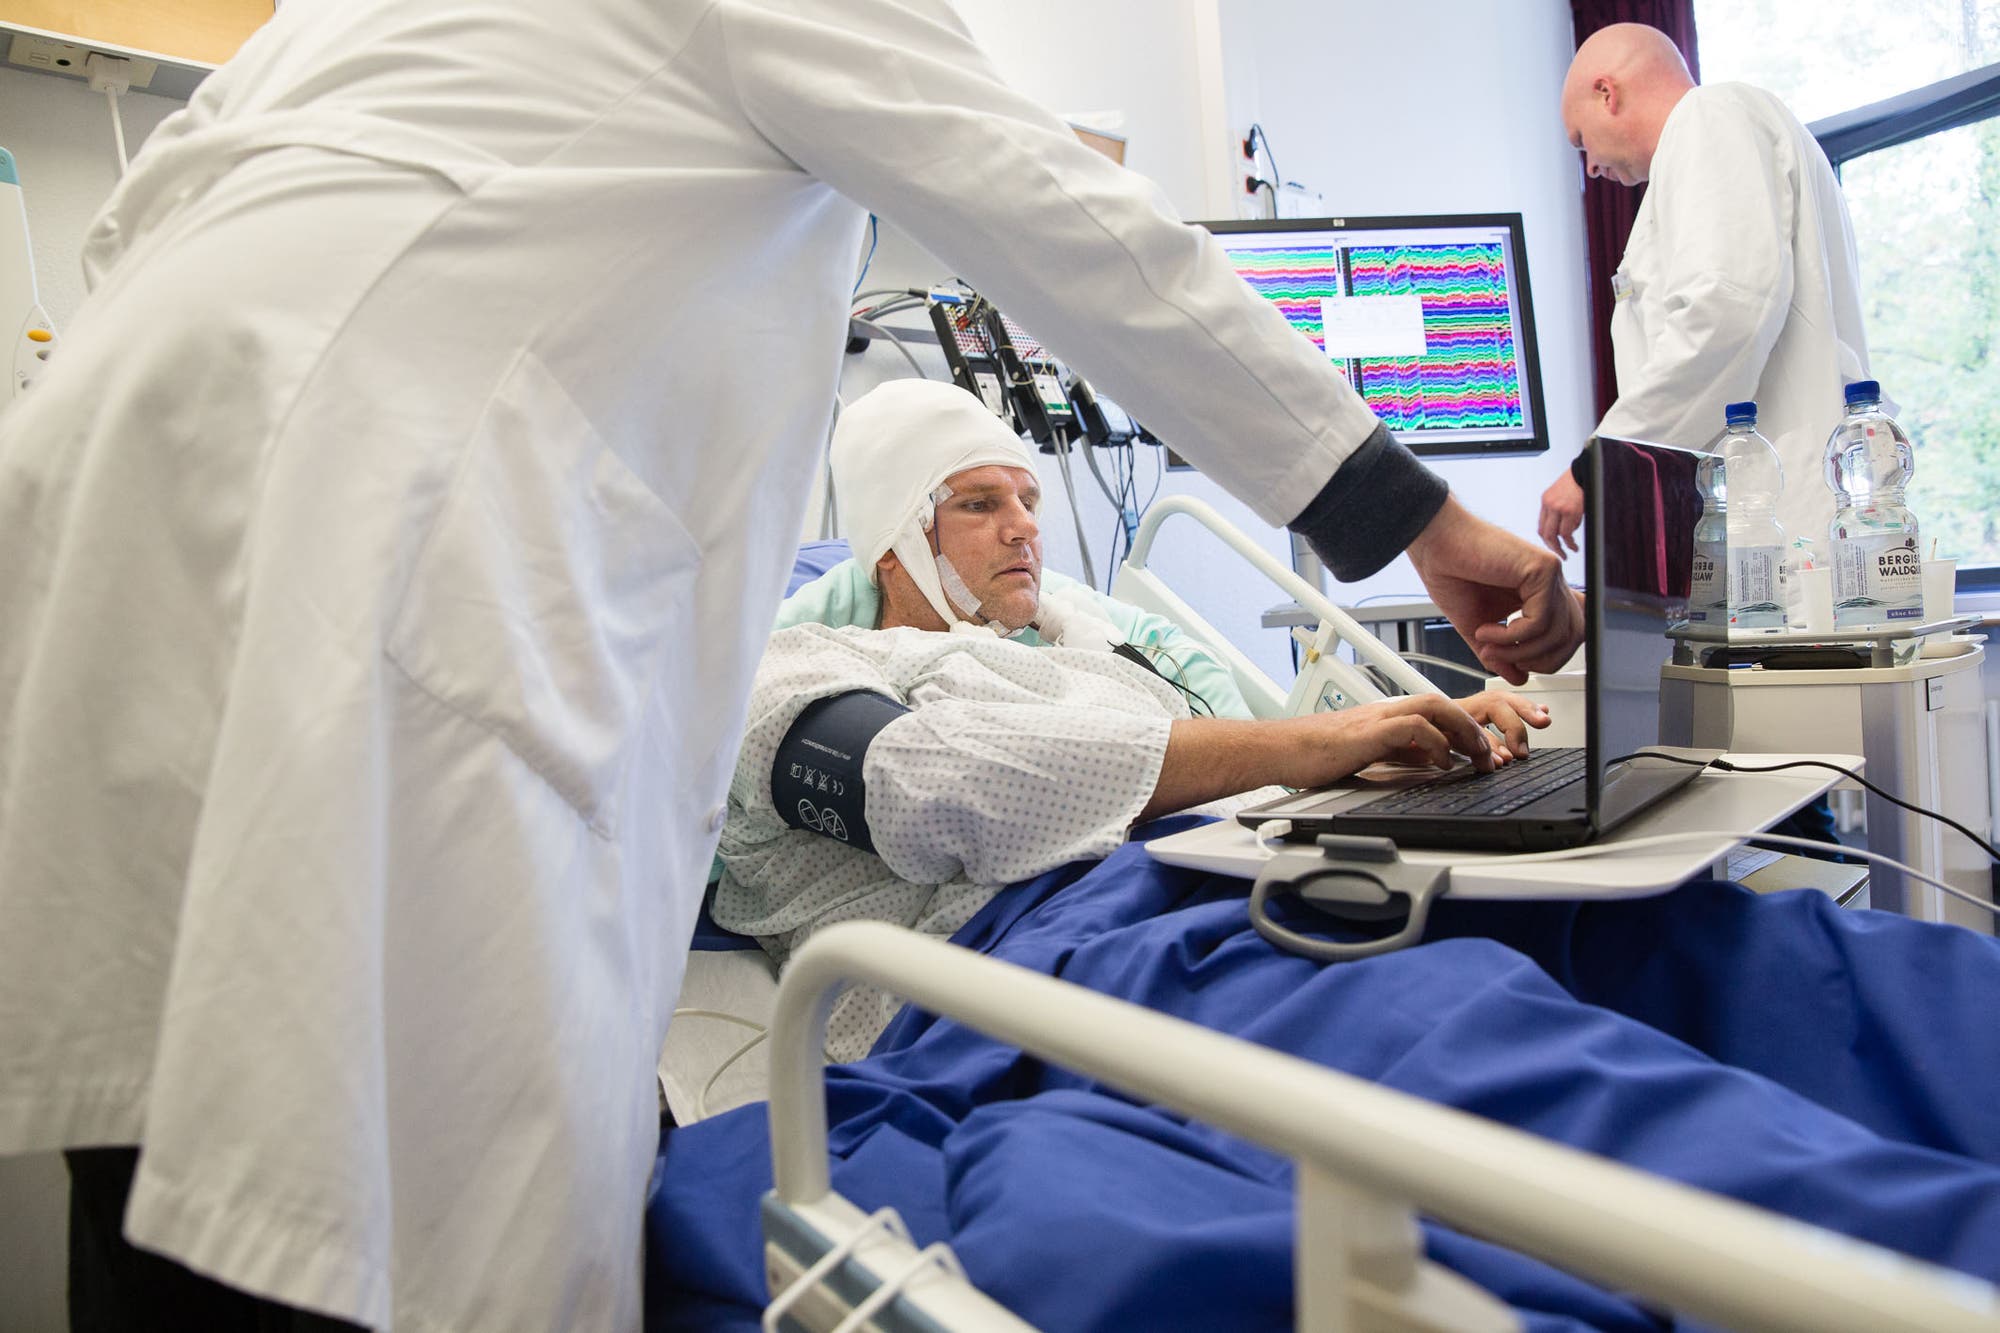 Ein Patient liegt im Krankenbett, vor ihm steht ein Laptop, auf den er, mit den Fingern auf der Tastatur, konzentriert schaut. Im Hintergrund sieht man einen Wissenschaftler, der sich die Hirnströme des Patienten ansieht